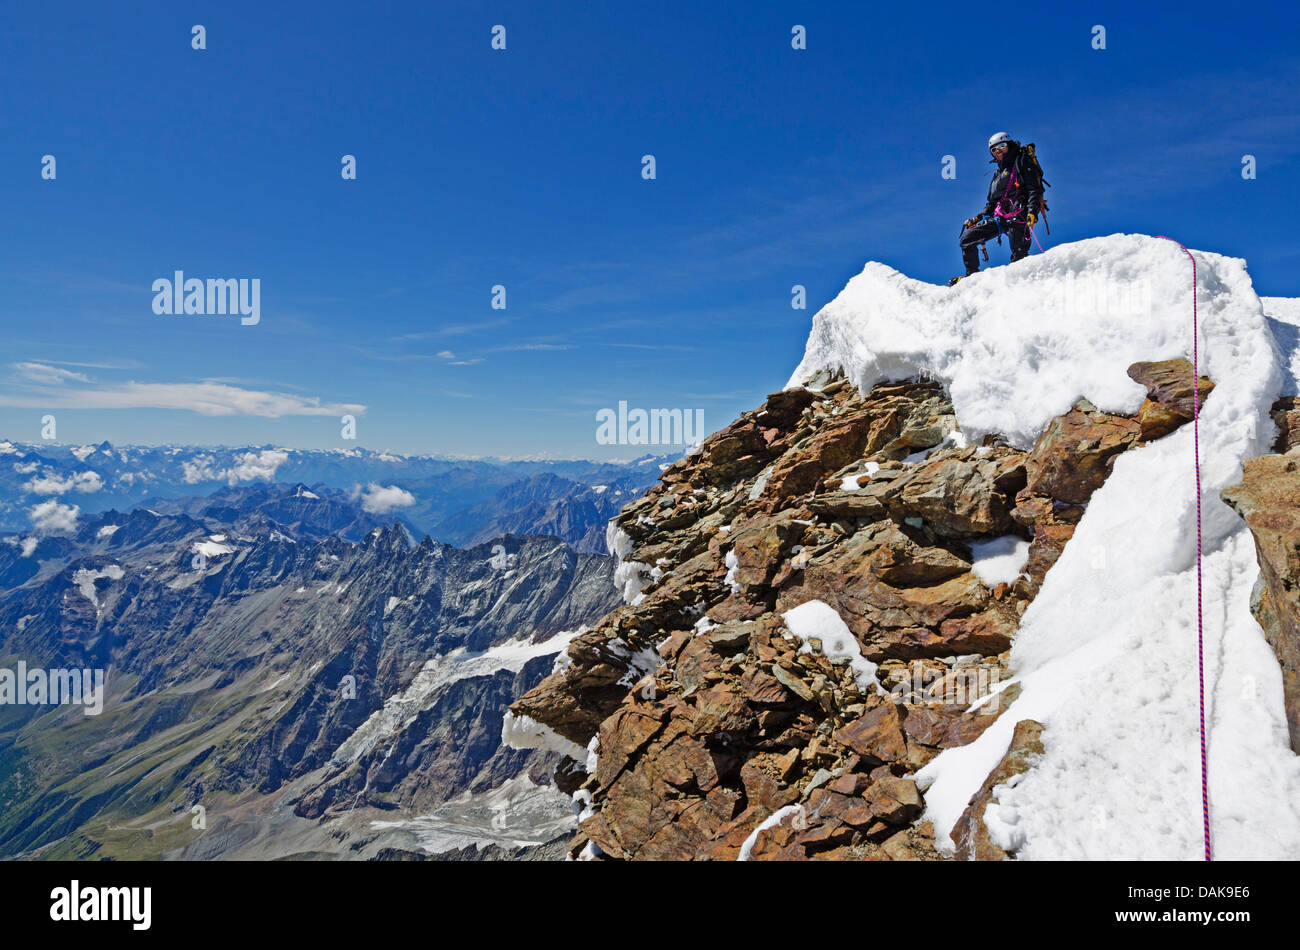 Grimpeur sur le sommet du Cervin (4478m), Zermatt, Alpes suisses, la Suisse, l'Europe (M.) Banque D'Images